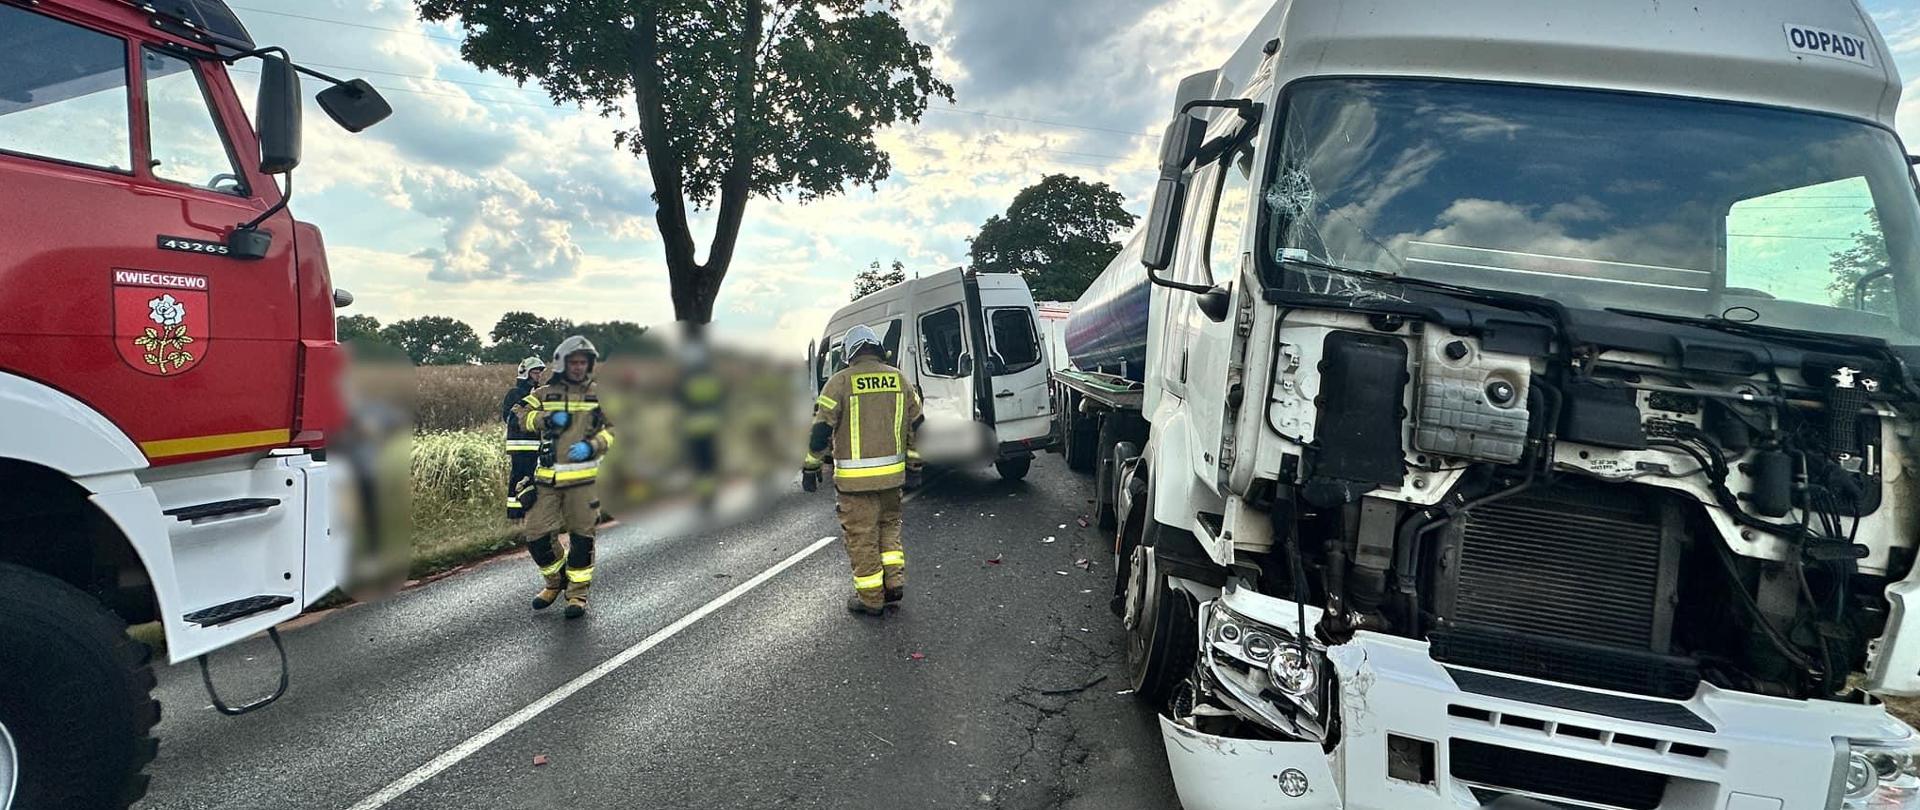 Na zdjęciu widać pracujących strażaków podczas wypadku ciężarówki z busem.